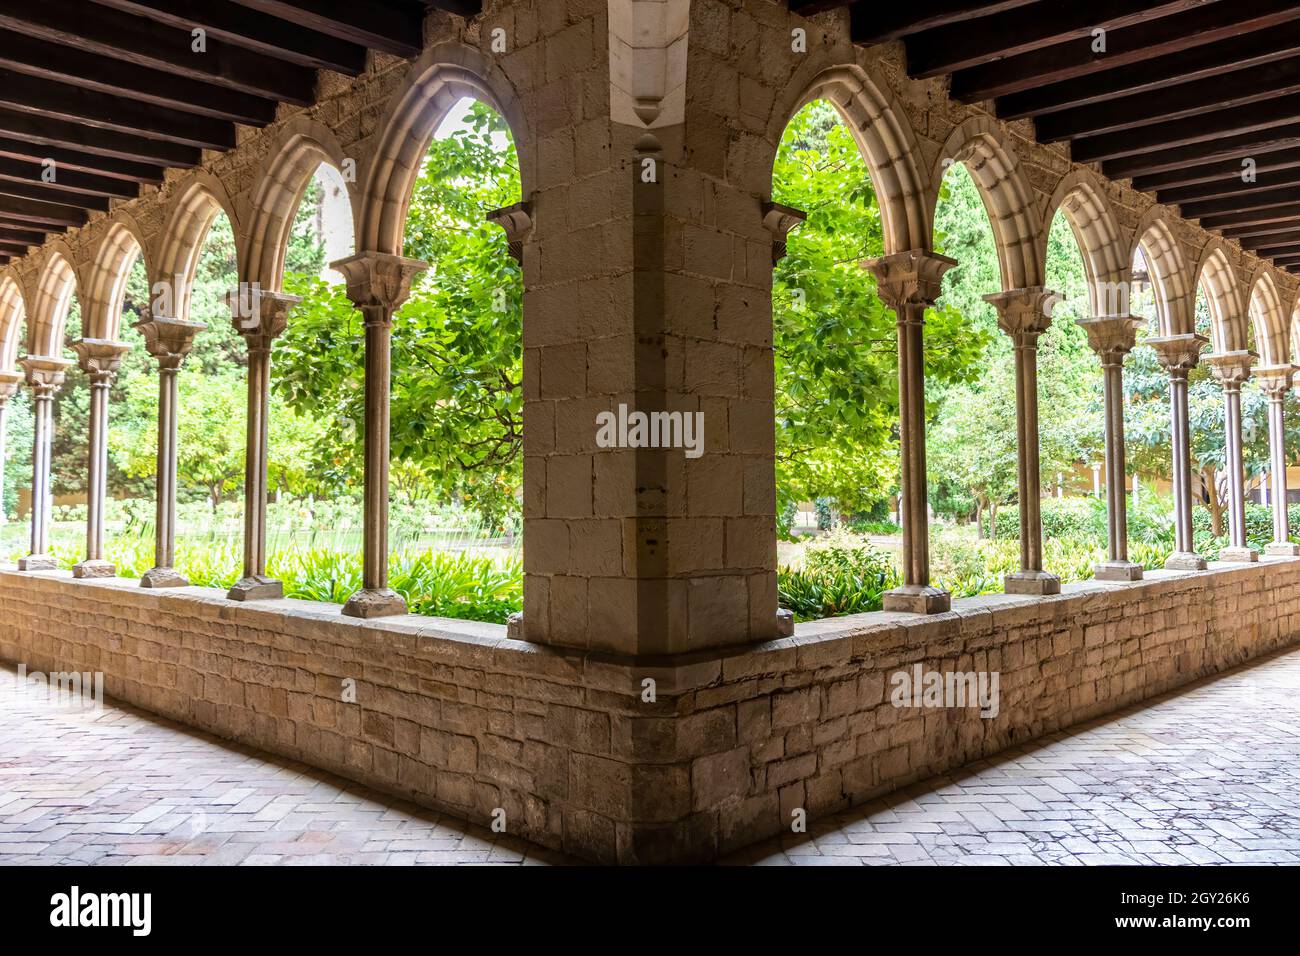 Barcelona, España - 24 de septiembre de 2021: El claustro del Monasterio de Pedralbes. Es un monasterio gótico en Barcelona, Cataluña, España Foto de stock